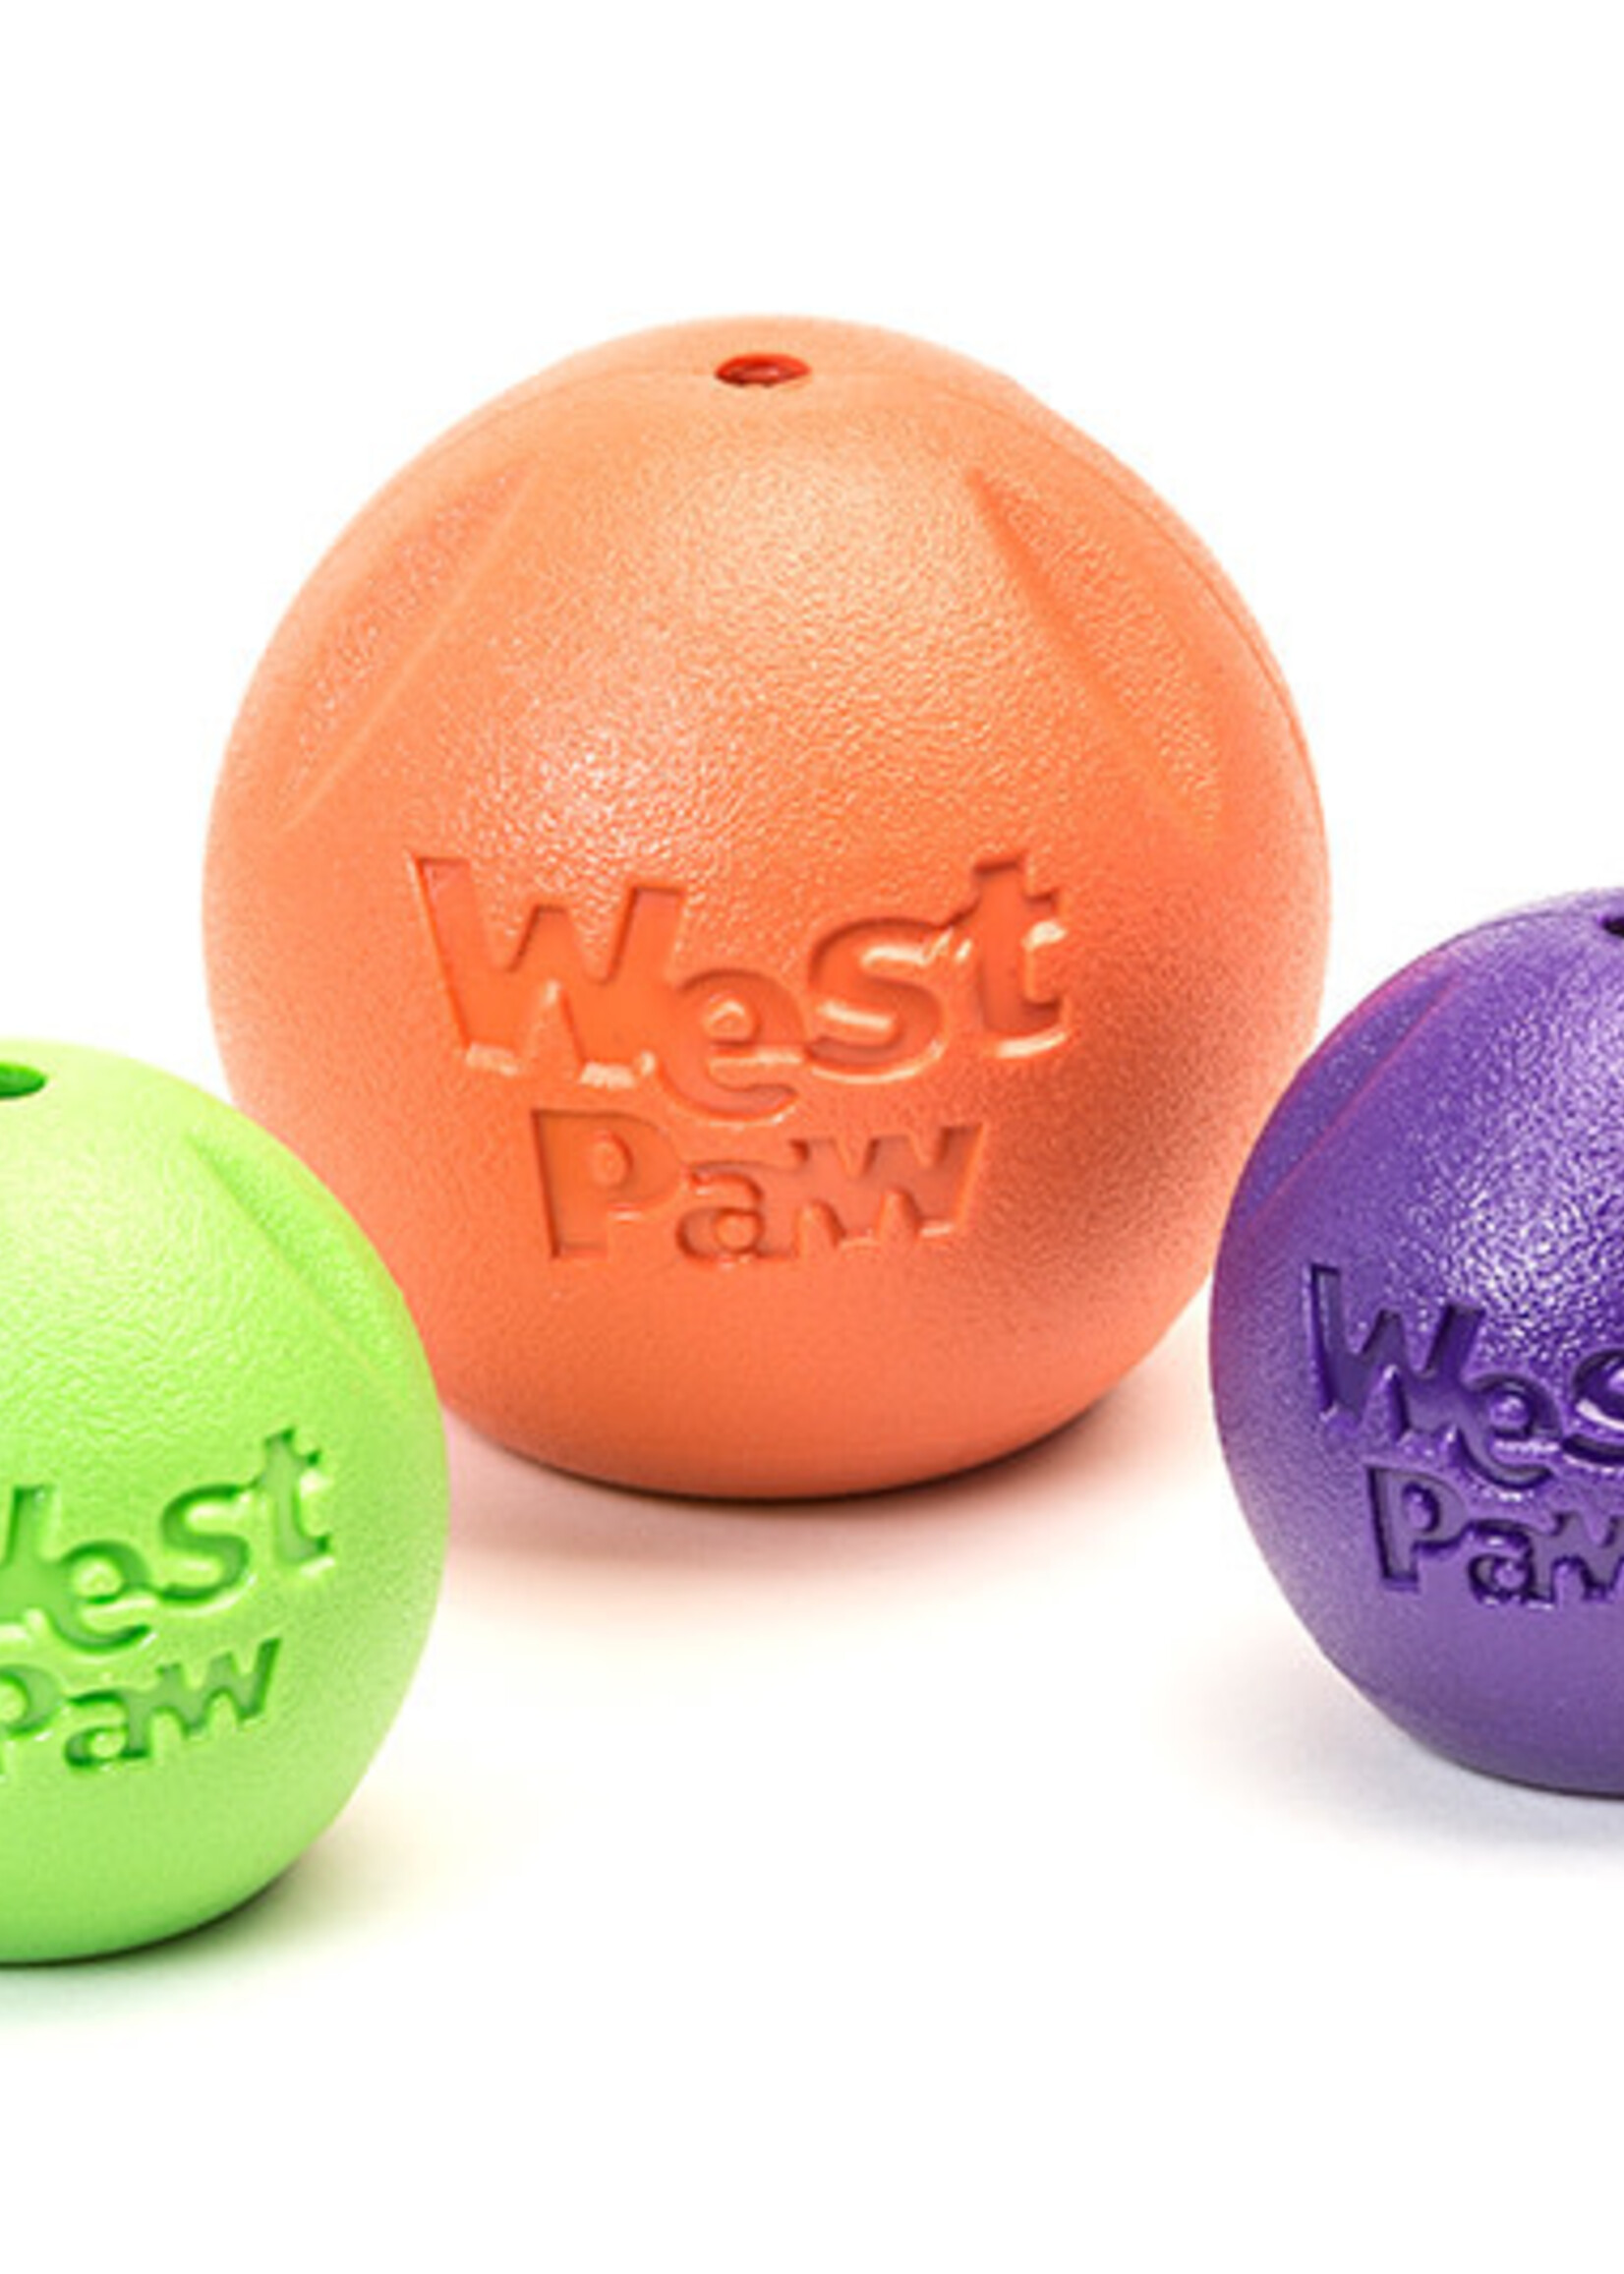 West Paw West Paw Rando Dog Toy